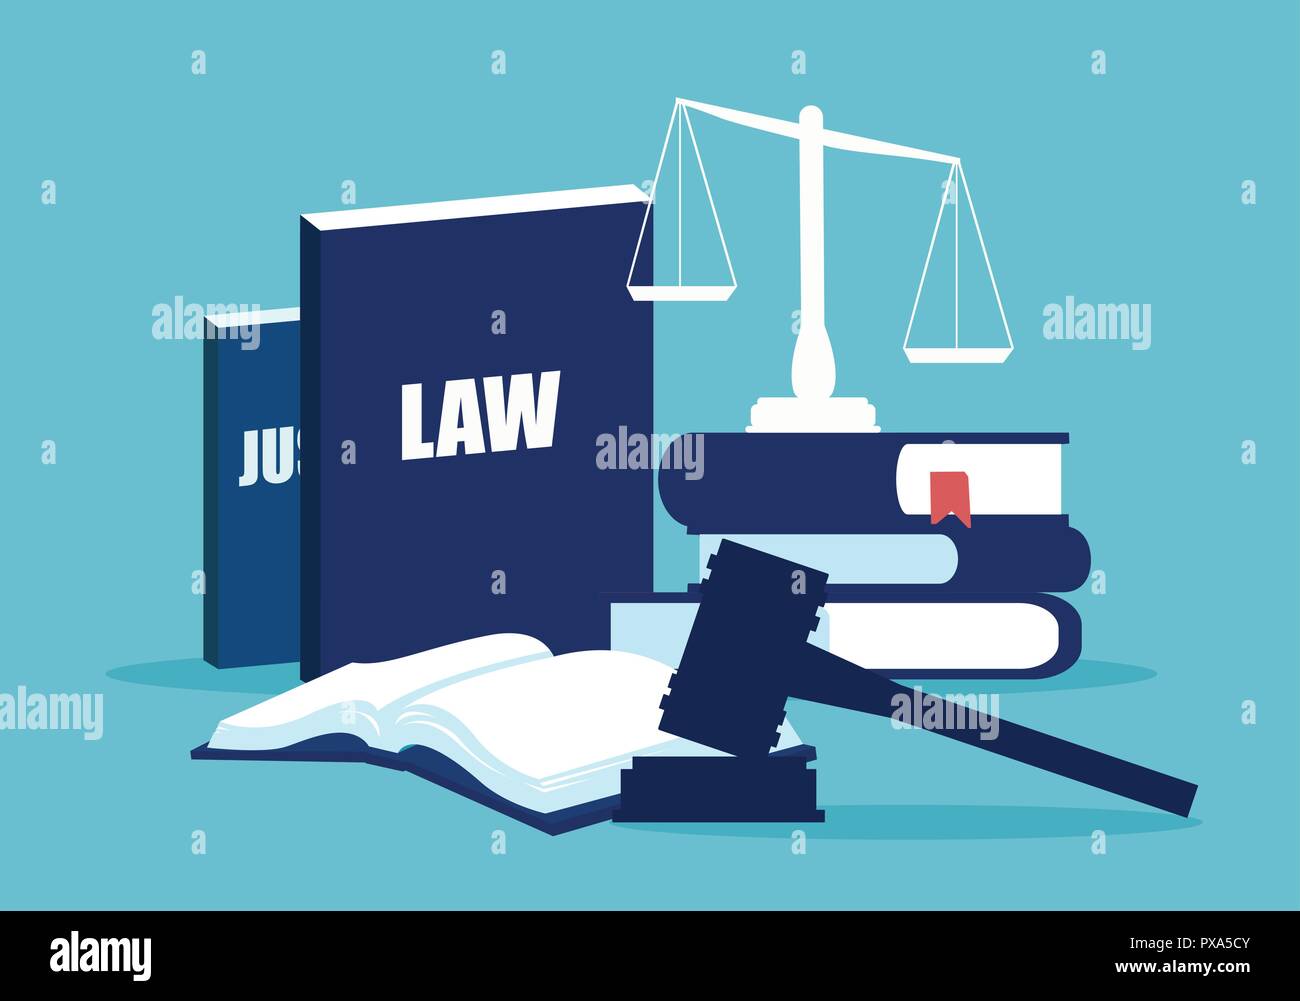 Conception simple des éléments du système juridique avec des livres et des écailles sur fond bleu Illustration de Vecteur